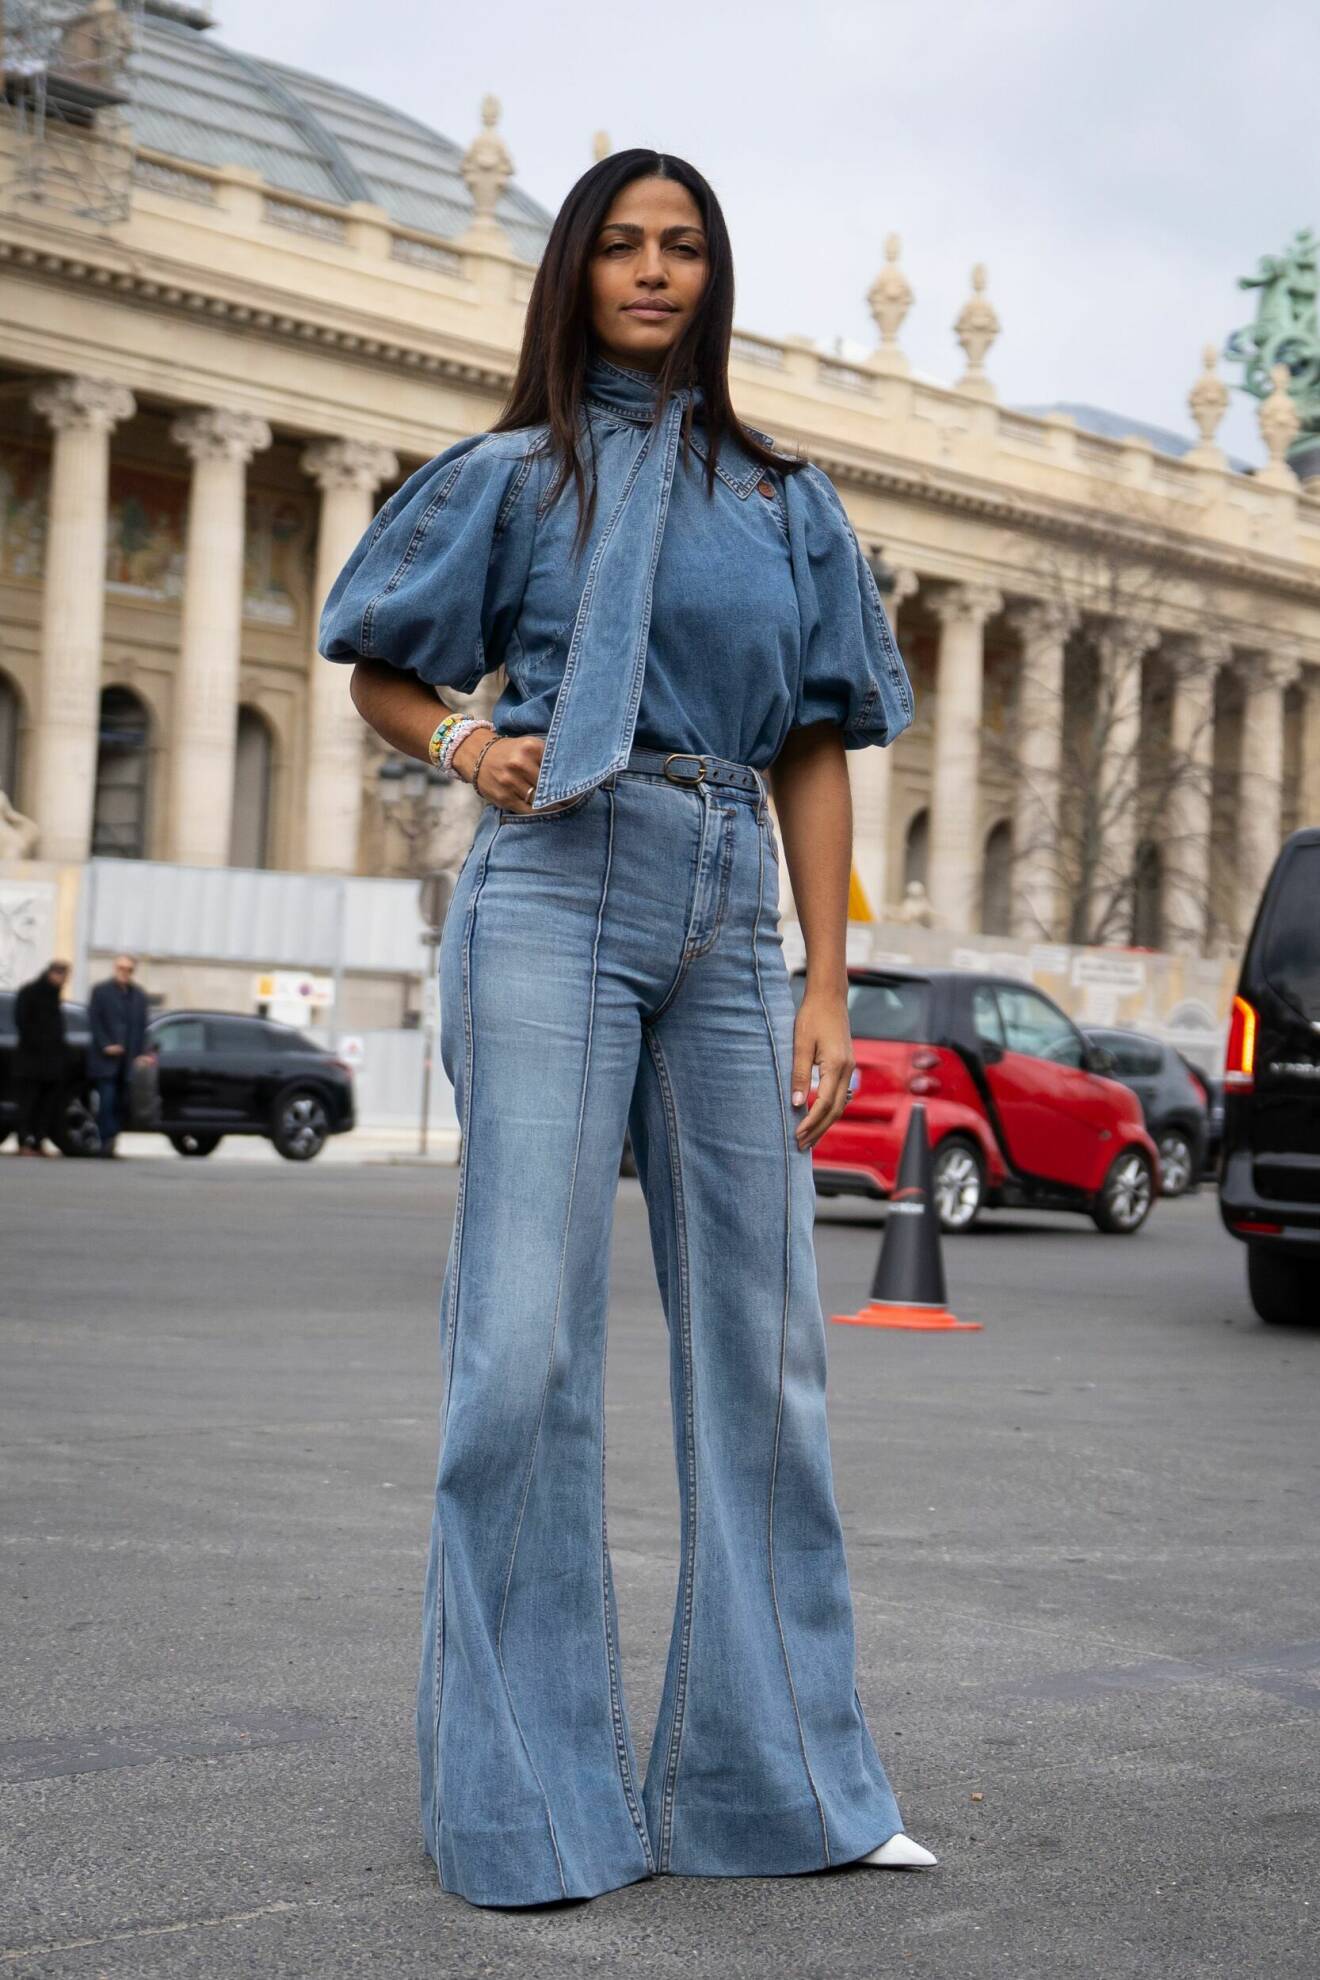 Streetstyle med en double denim-look med jeans och matchande blus med puffärmar i denim.